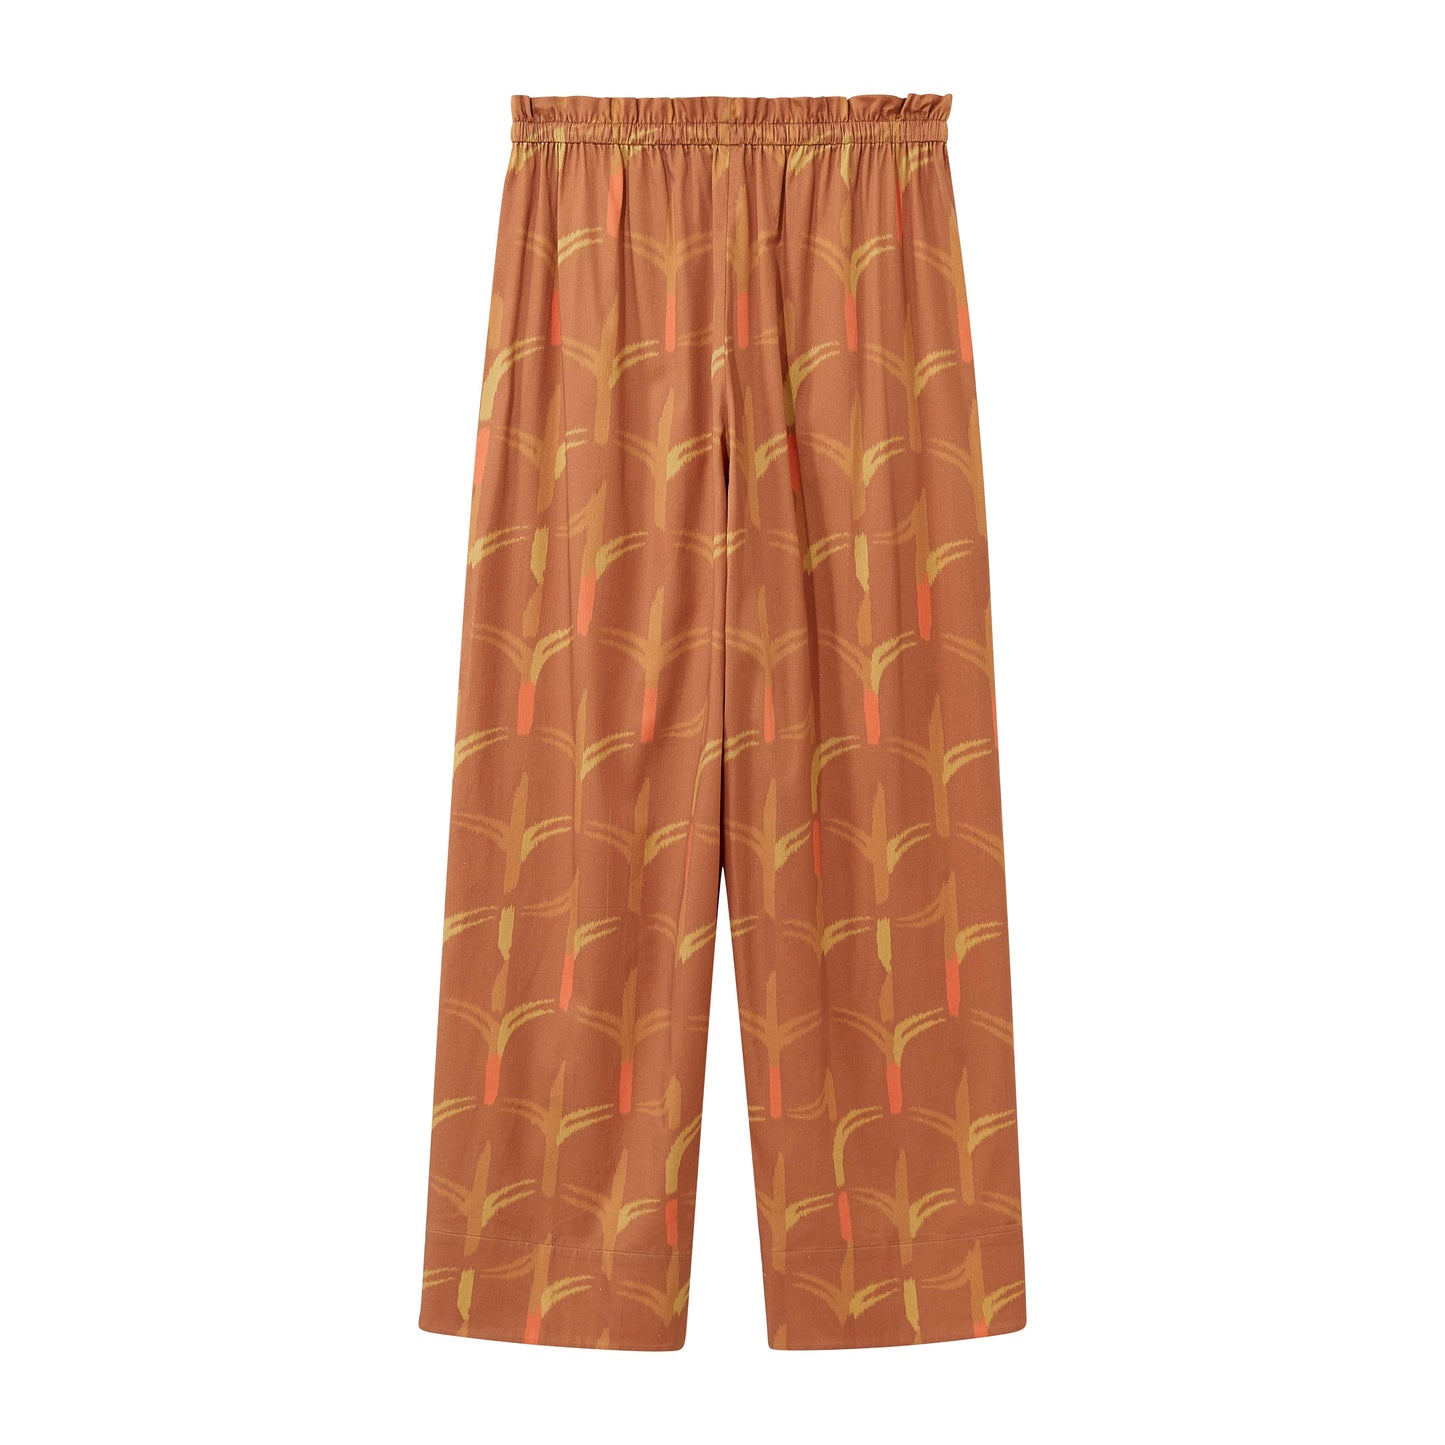 the brown pajama pants